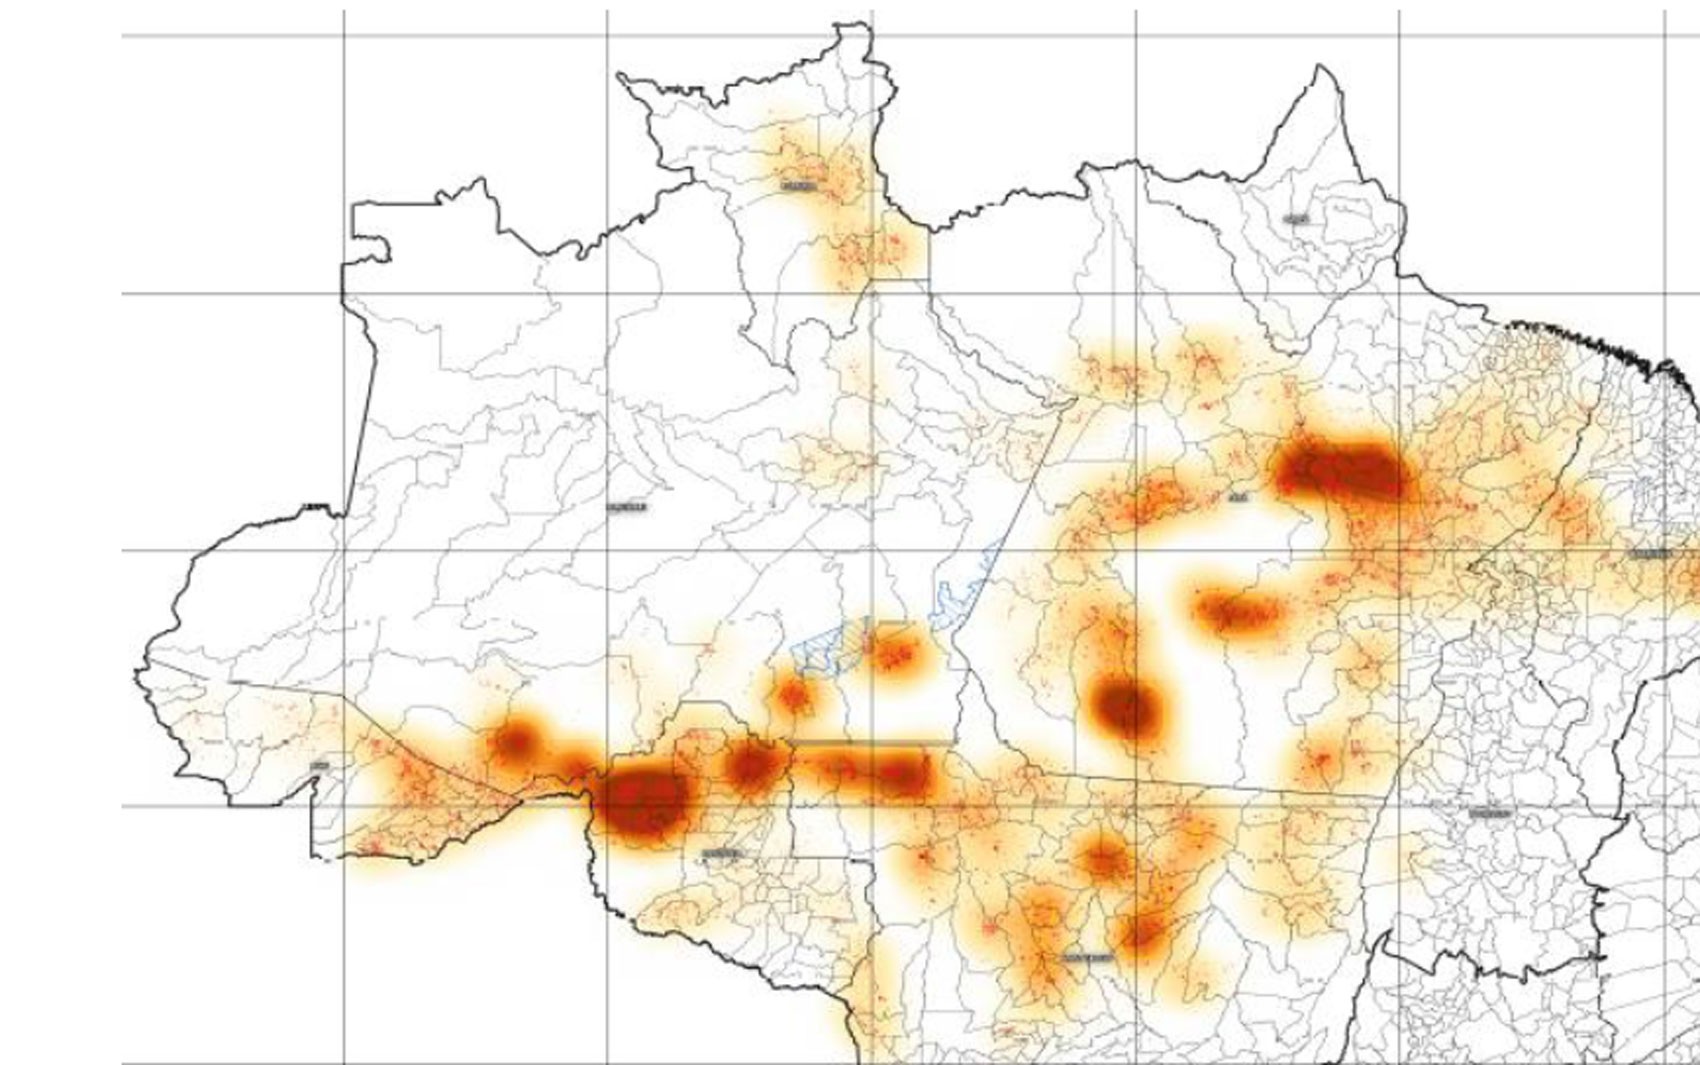 Imagem divulgada pelo Ministério do Meio ambiente mostra as principais áreas de desmatamento da Amazônia (Foto: Ministério do Meio Ambiente/Divulgação)